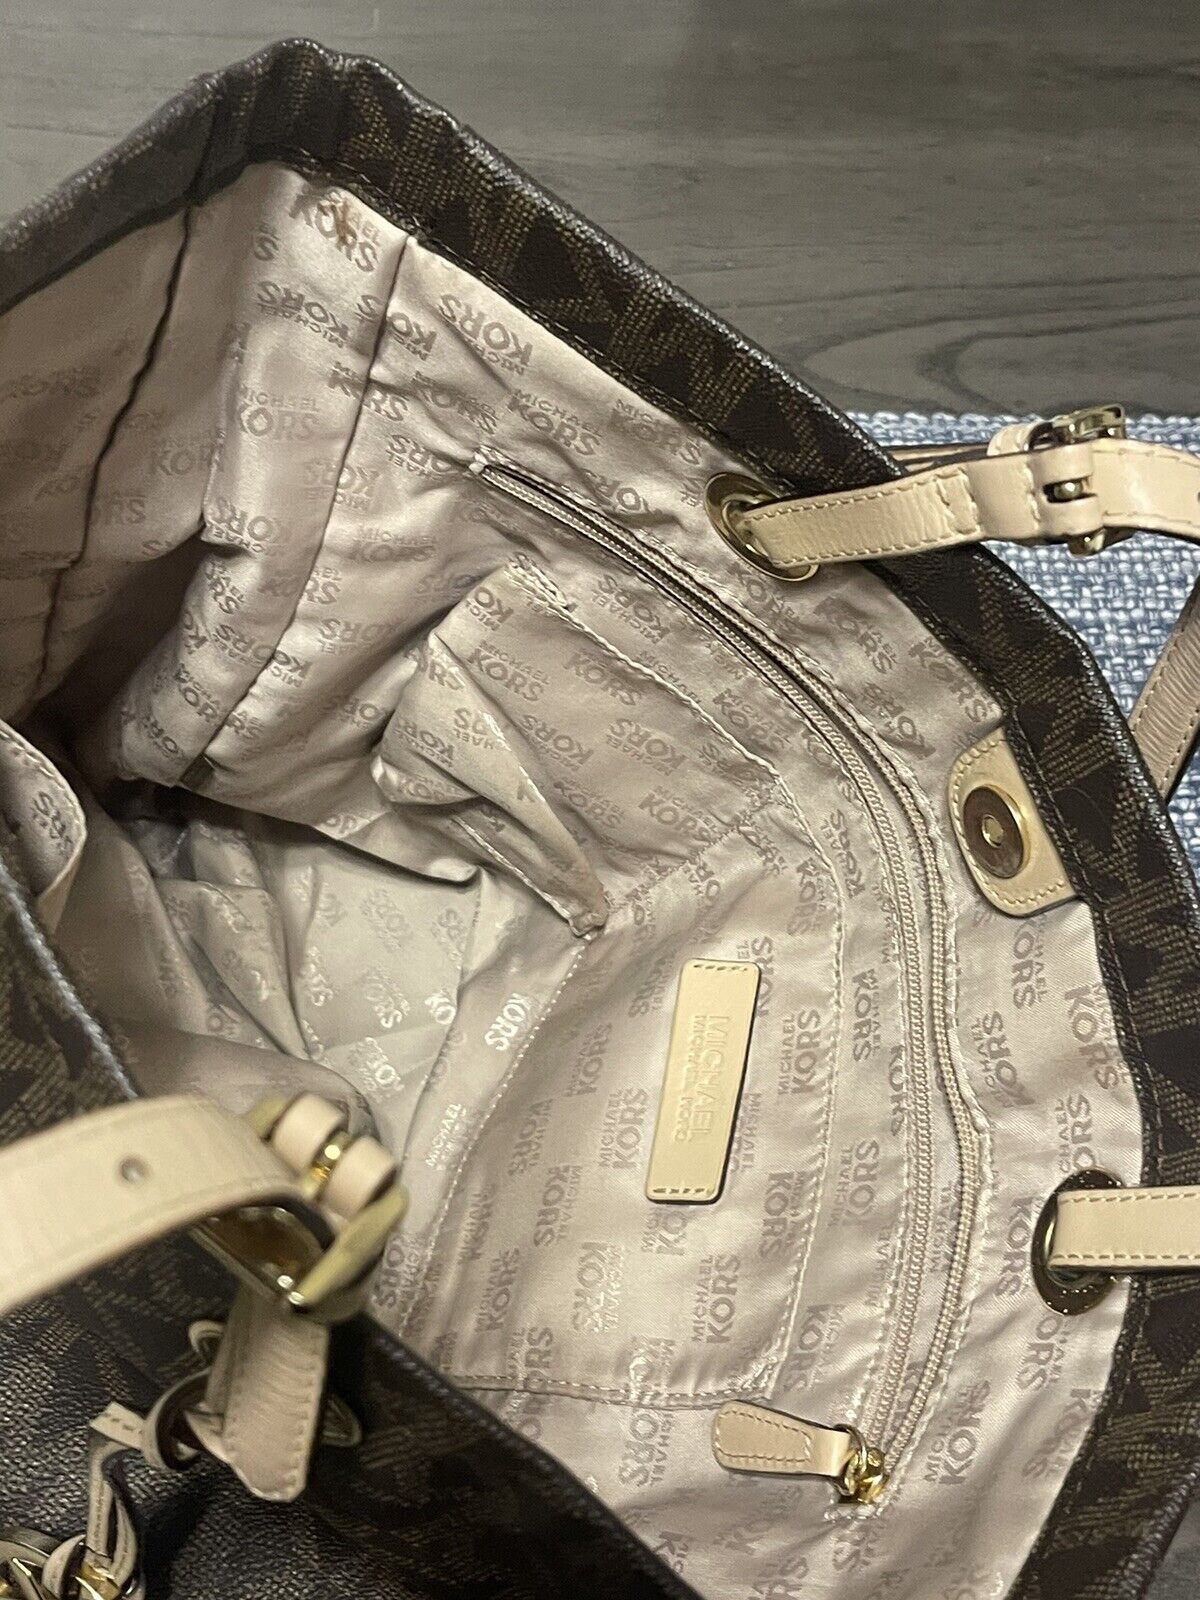 Michael Kors Tote Bag Original Price ₨22,000 Selling Price ₨10,000